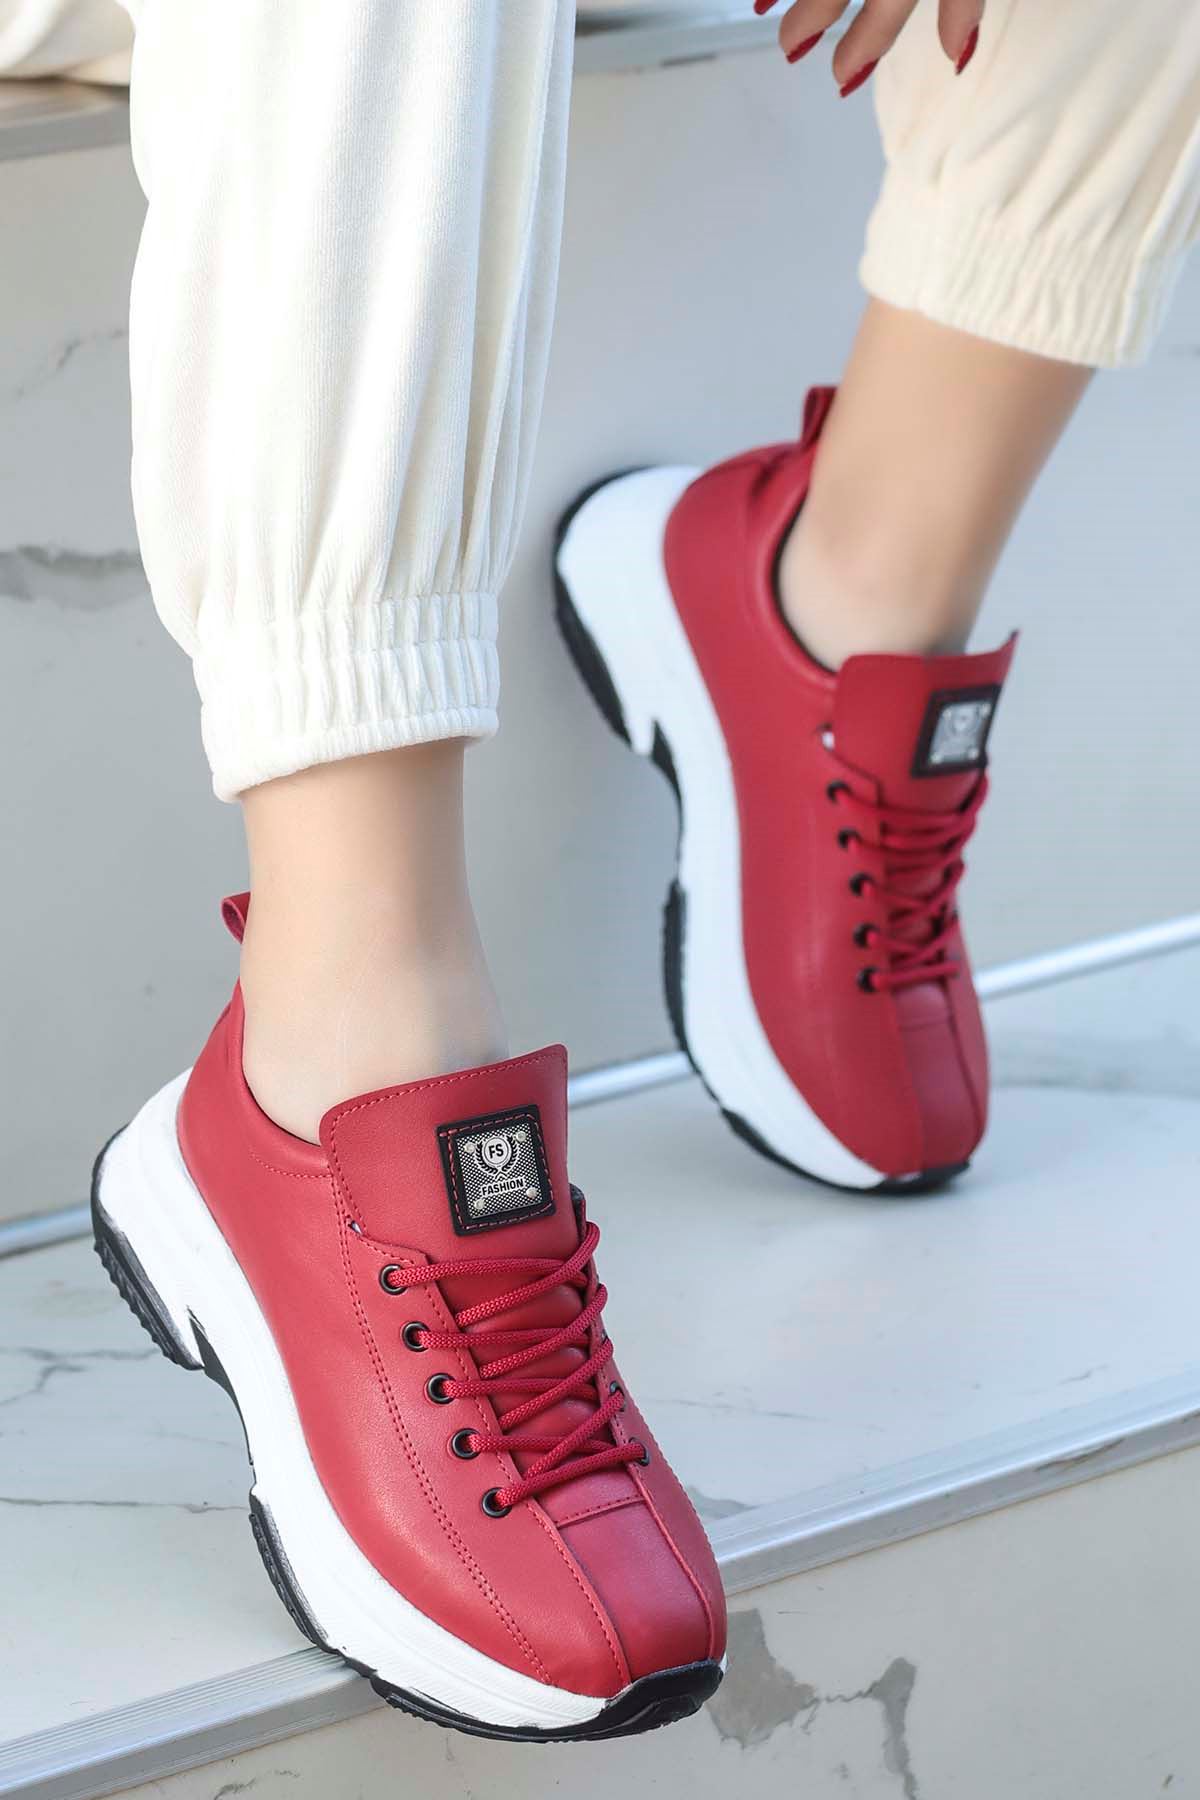 Frm-701 Spor Ayakkabı Kırmızı Deri